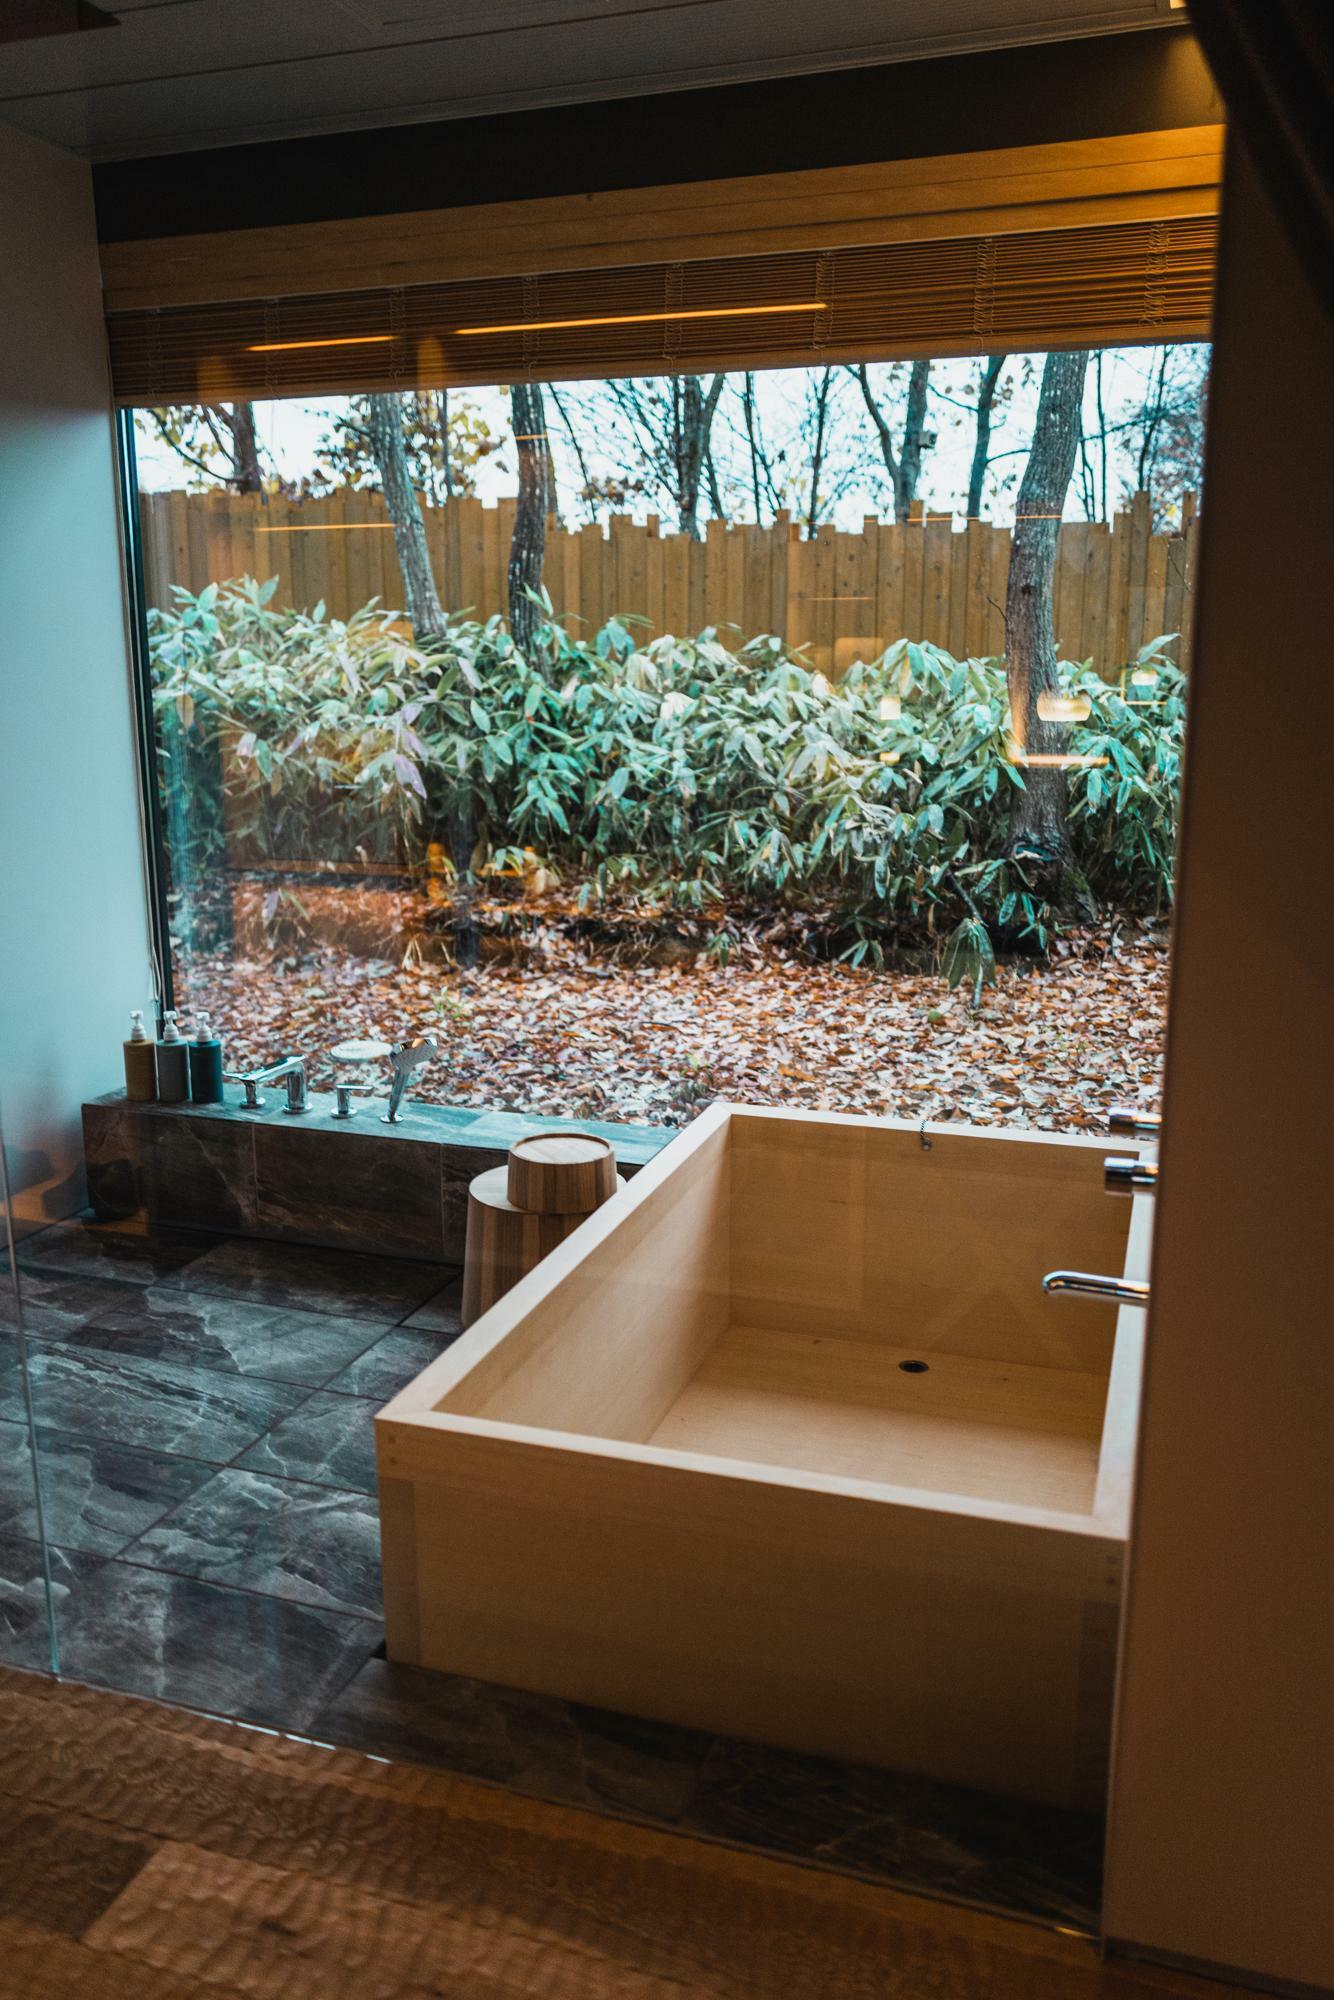 内風呂は総檜造り。オープンからまだまだ時間が経っていないこともあって、檜の濃い香りが浴室に漂っています